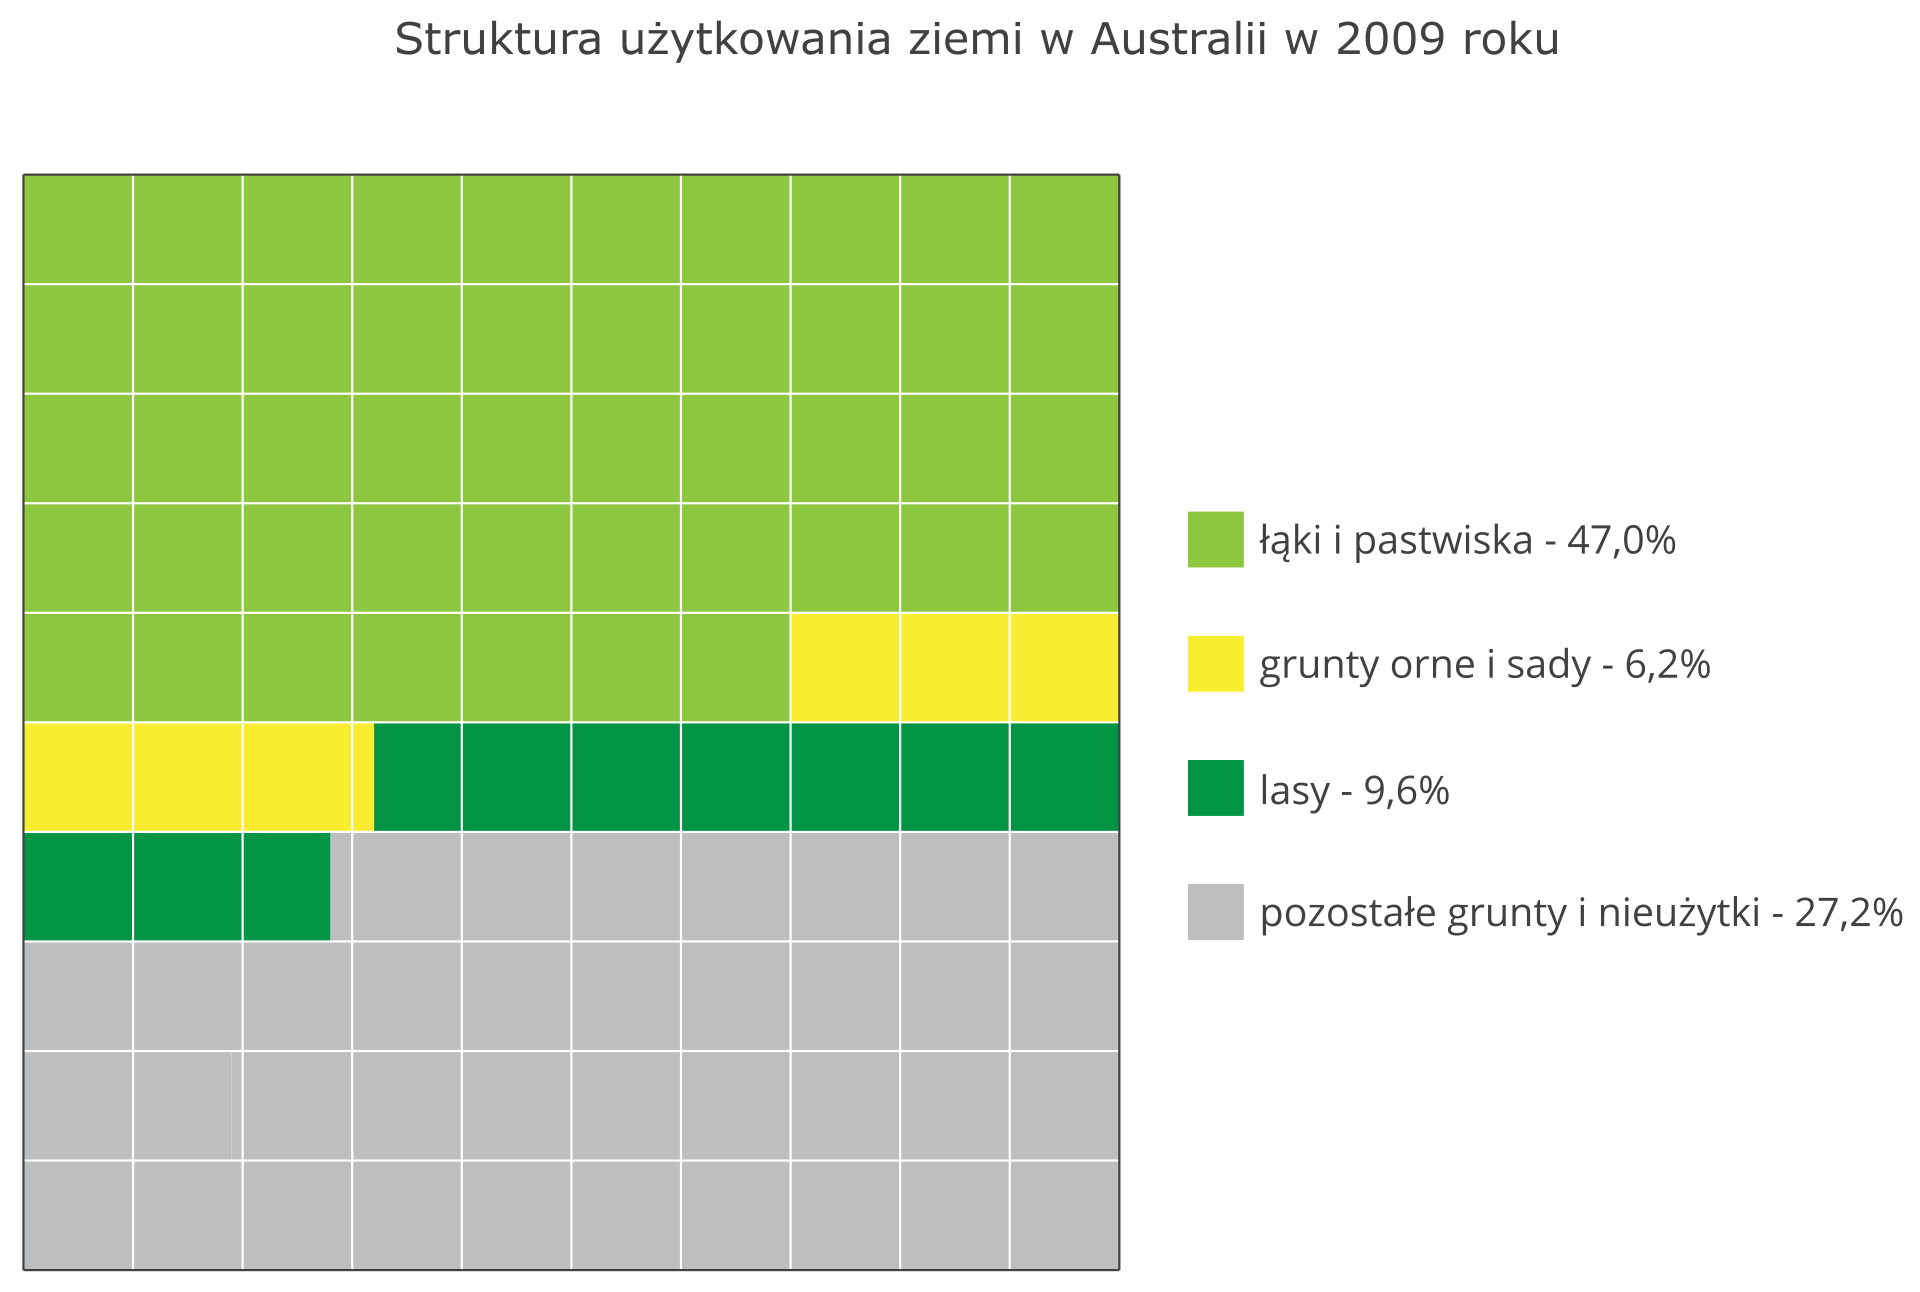 Na ilustracji diagram struktura użytkowania ziemi w Australii w dwa tysiące dziewiątym roku. Łąki i pastwiska – 47%, grunty orne i sady – 6,2%, lasy – 9,6%, pozostałe grunty i nieużytki – 27,2%.